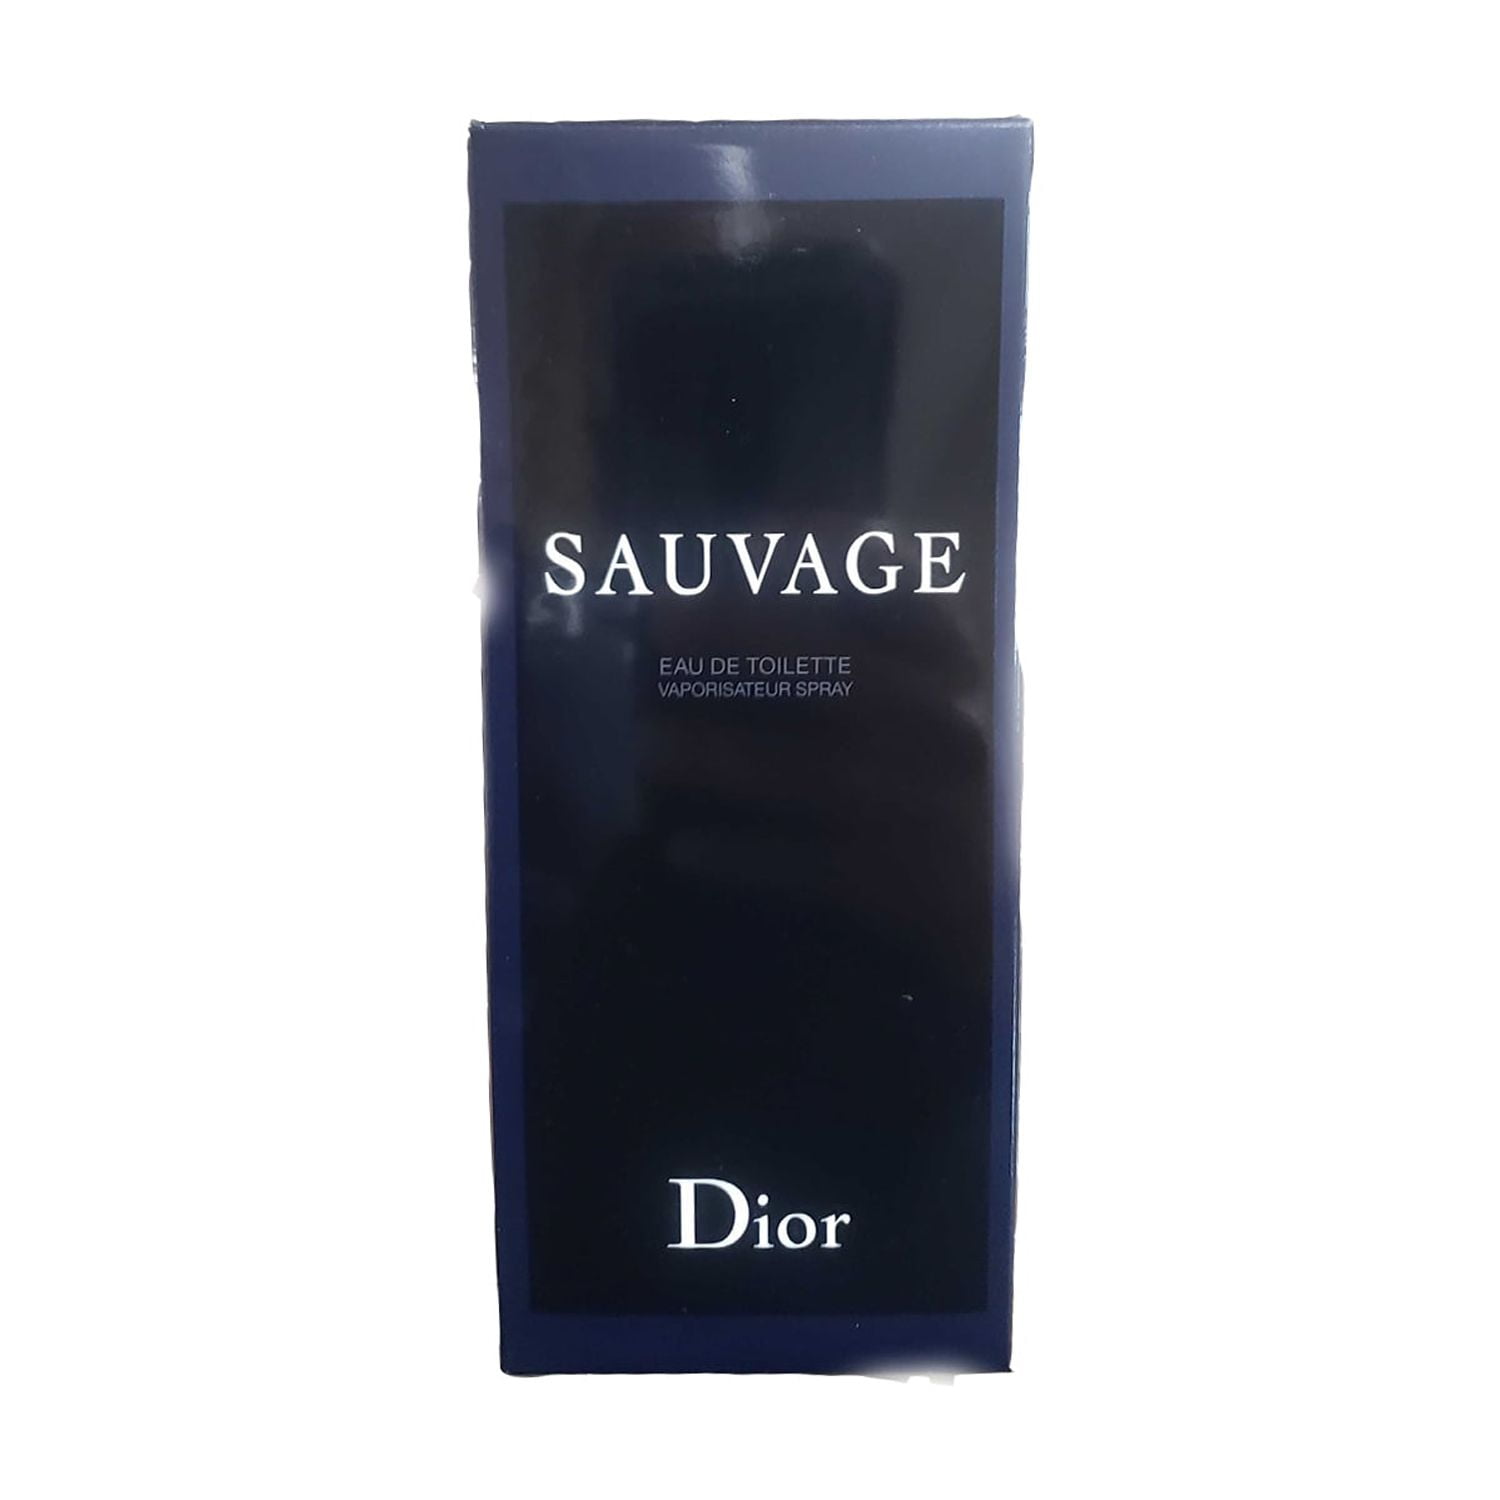 Dior Sauvage Eau de Toilette, Cologne for Men, 6.8 Oz 